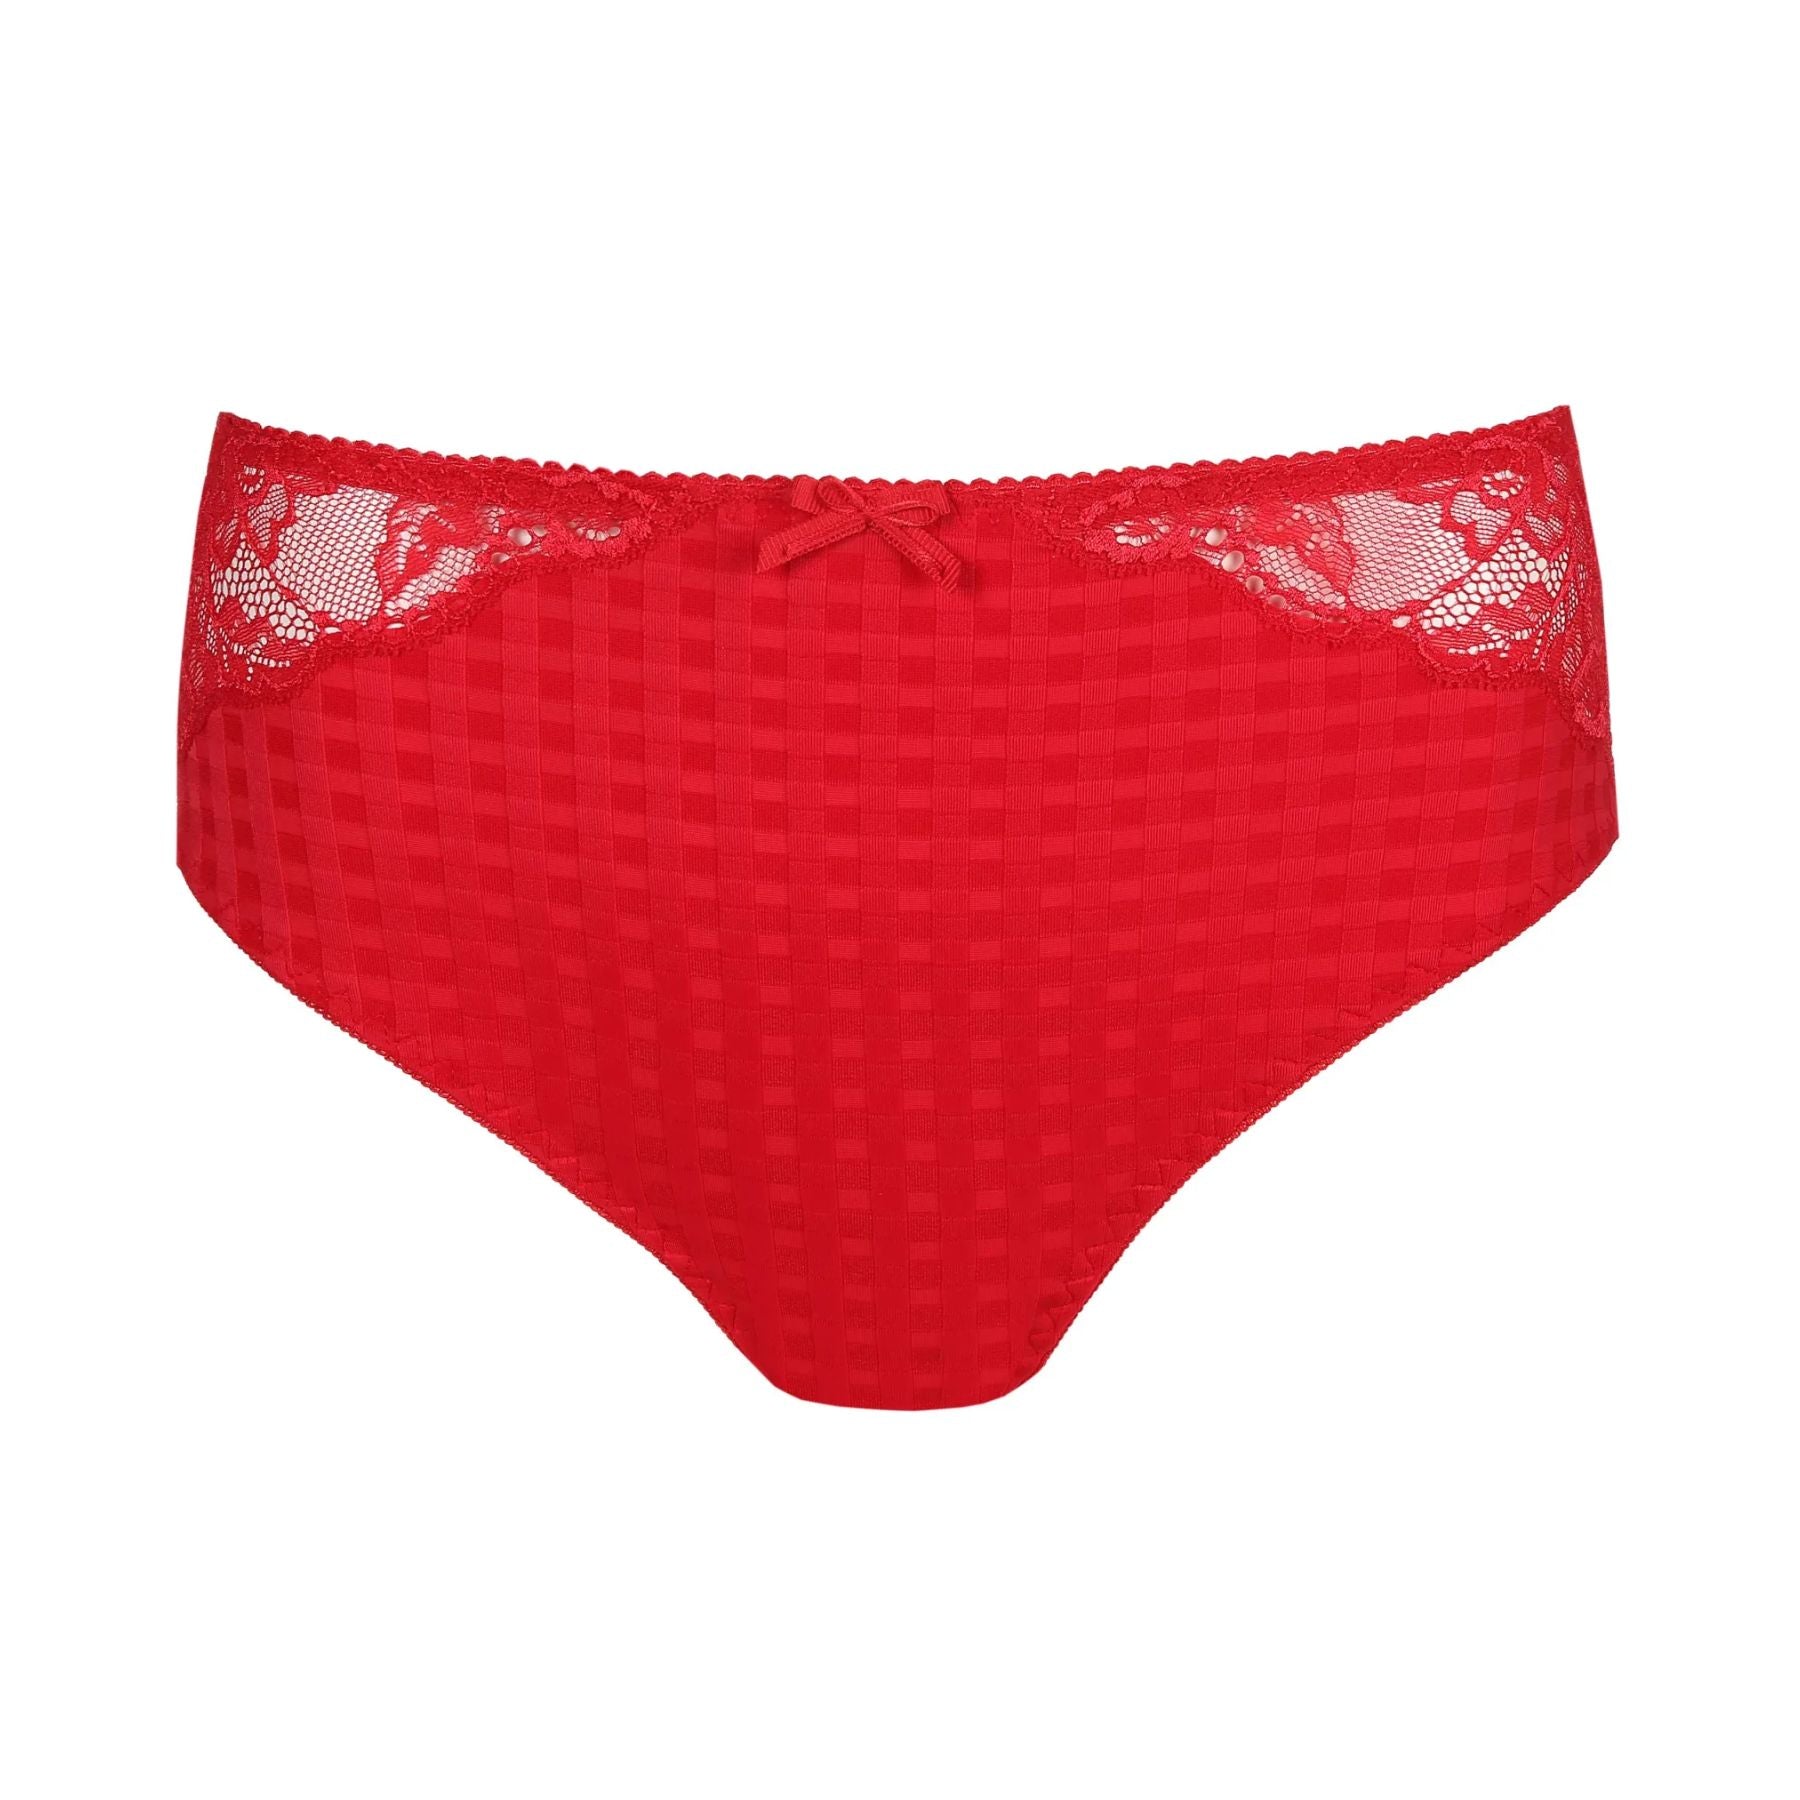 Buy ebony underwear in Sri Lanka for Best Price